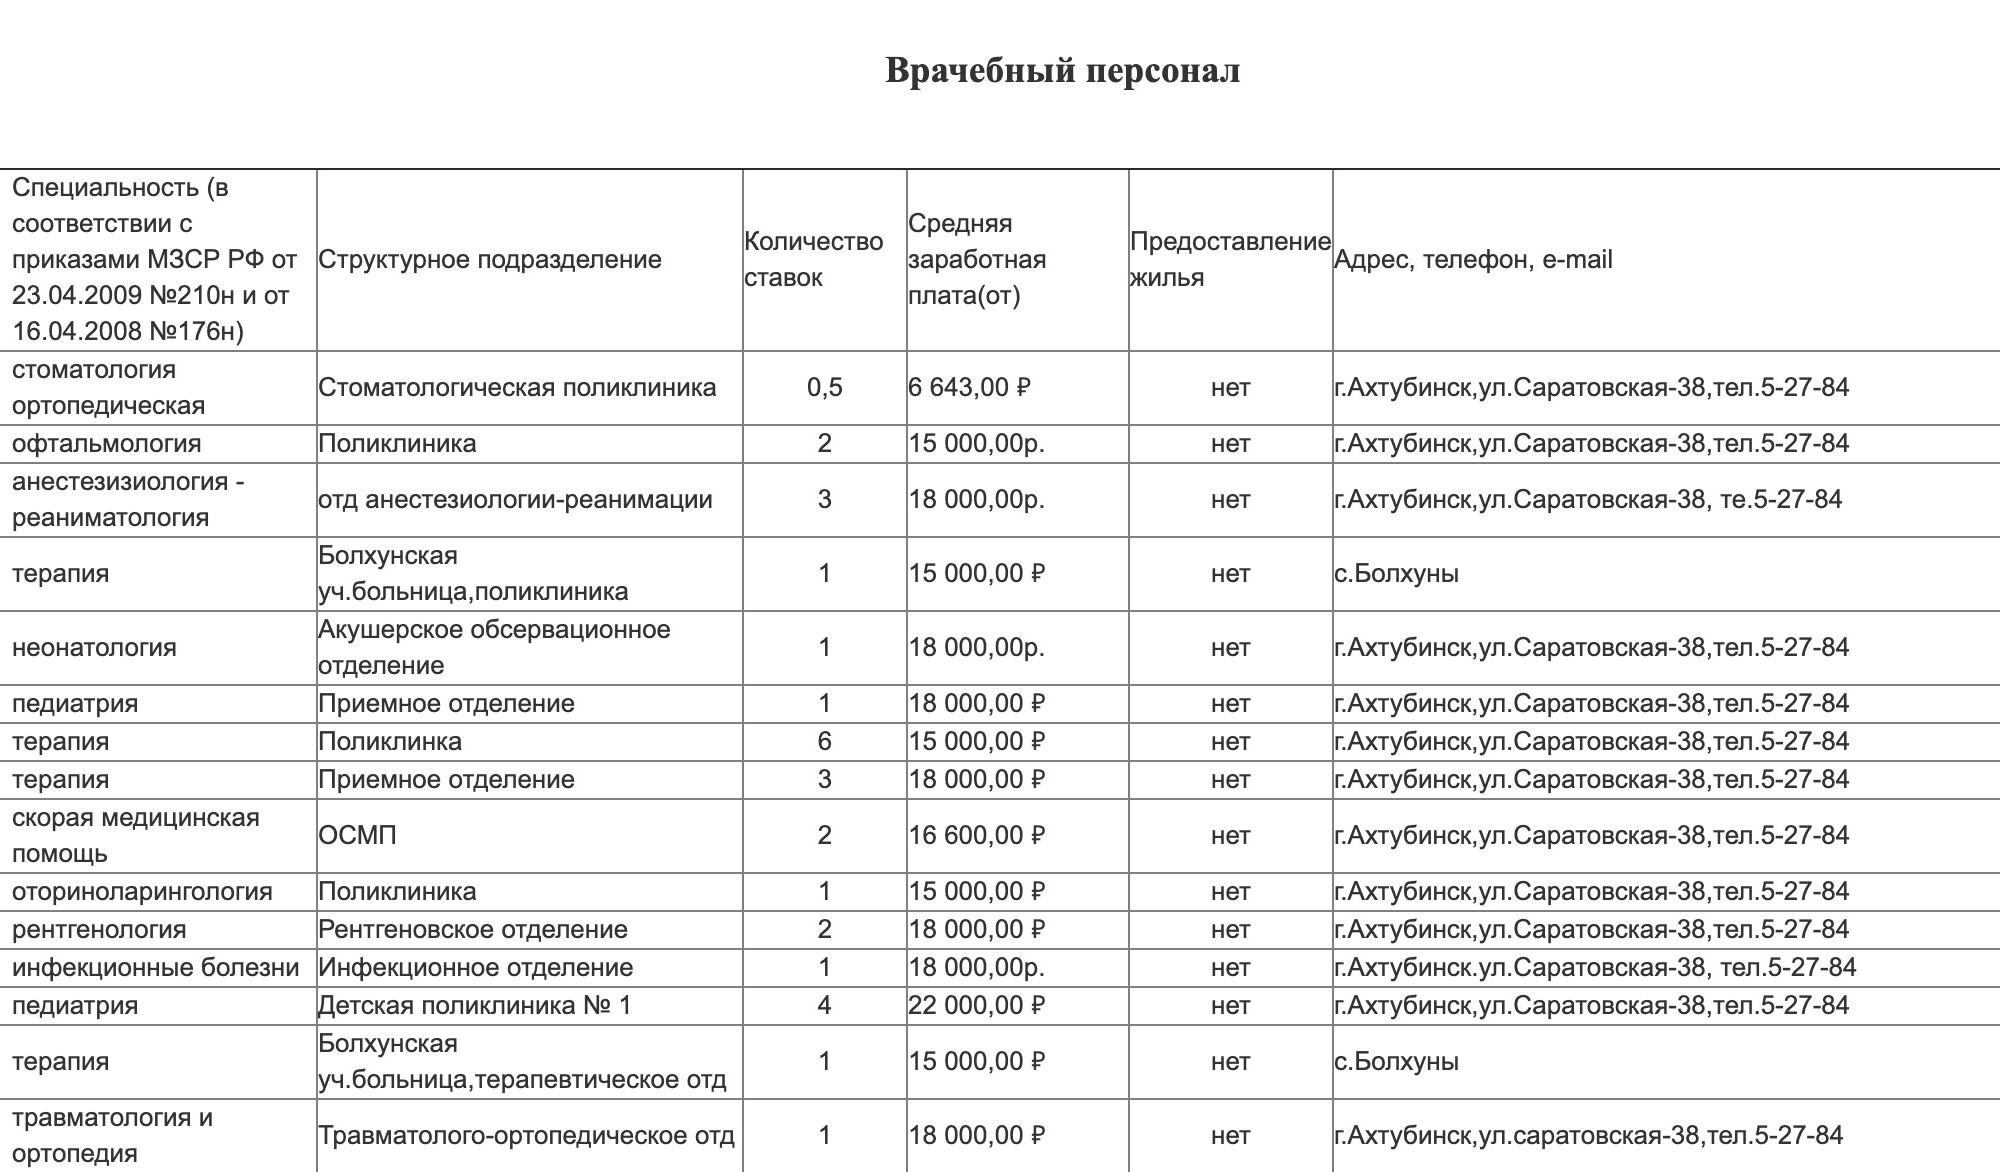 Зарплата в ахтубинской районной больнице — {от 15 000 ₽} (http://www.crbahtuba.ru/vakansii)